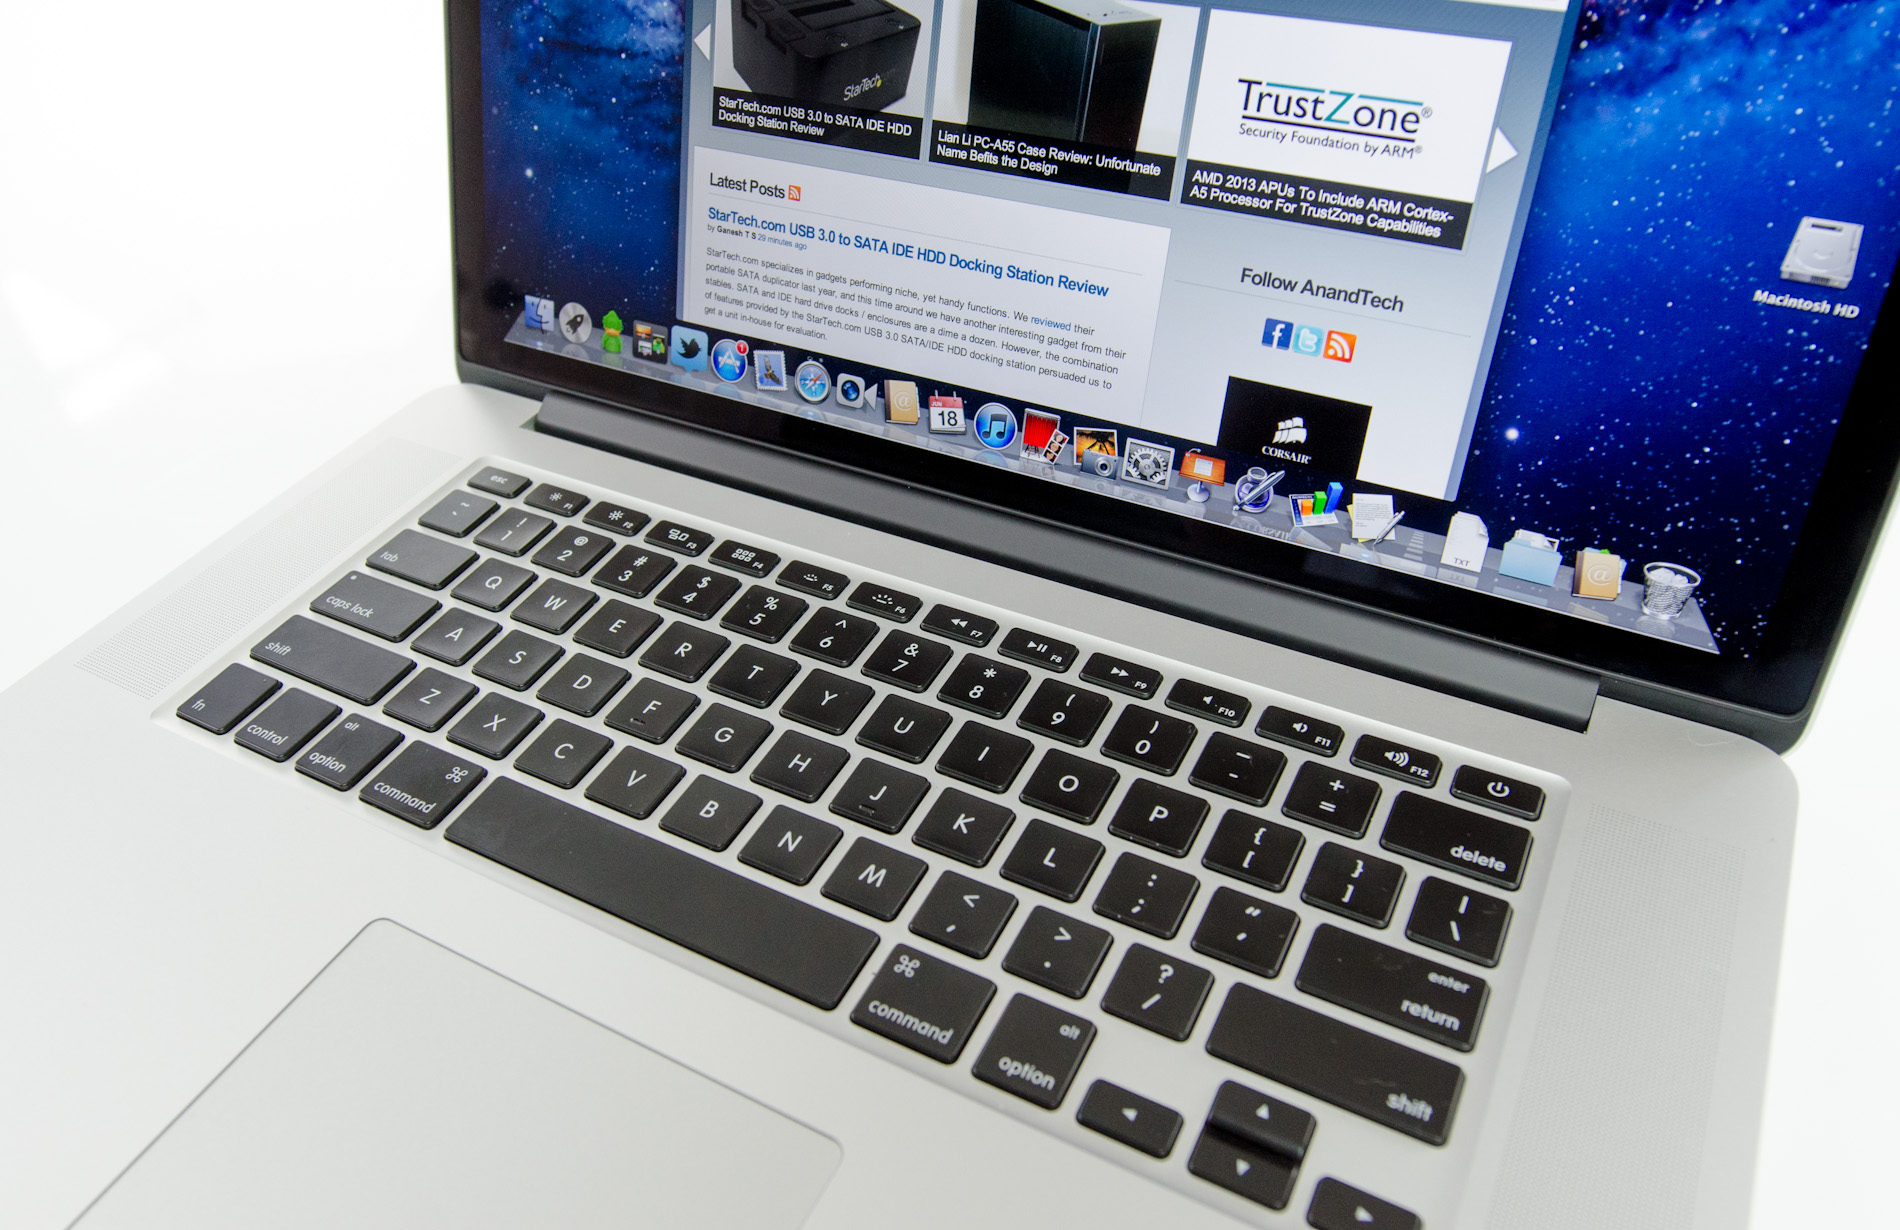 The next-gen MacBook Pro with Retina Display Review